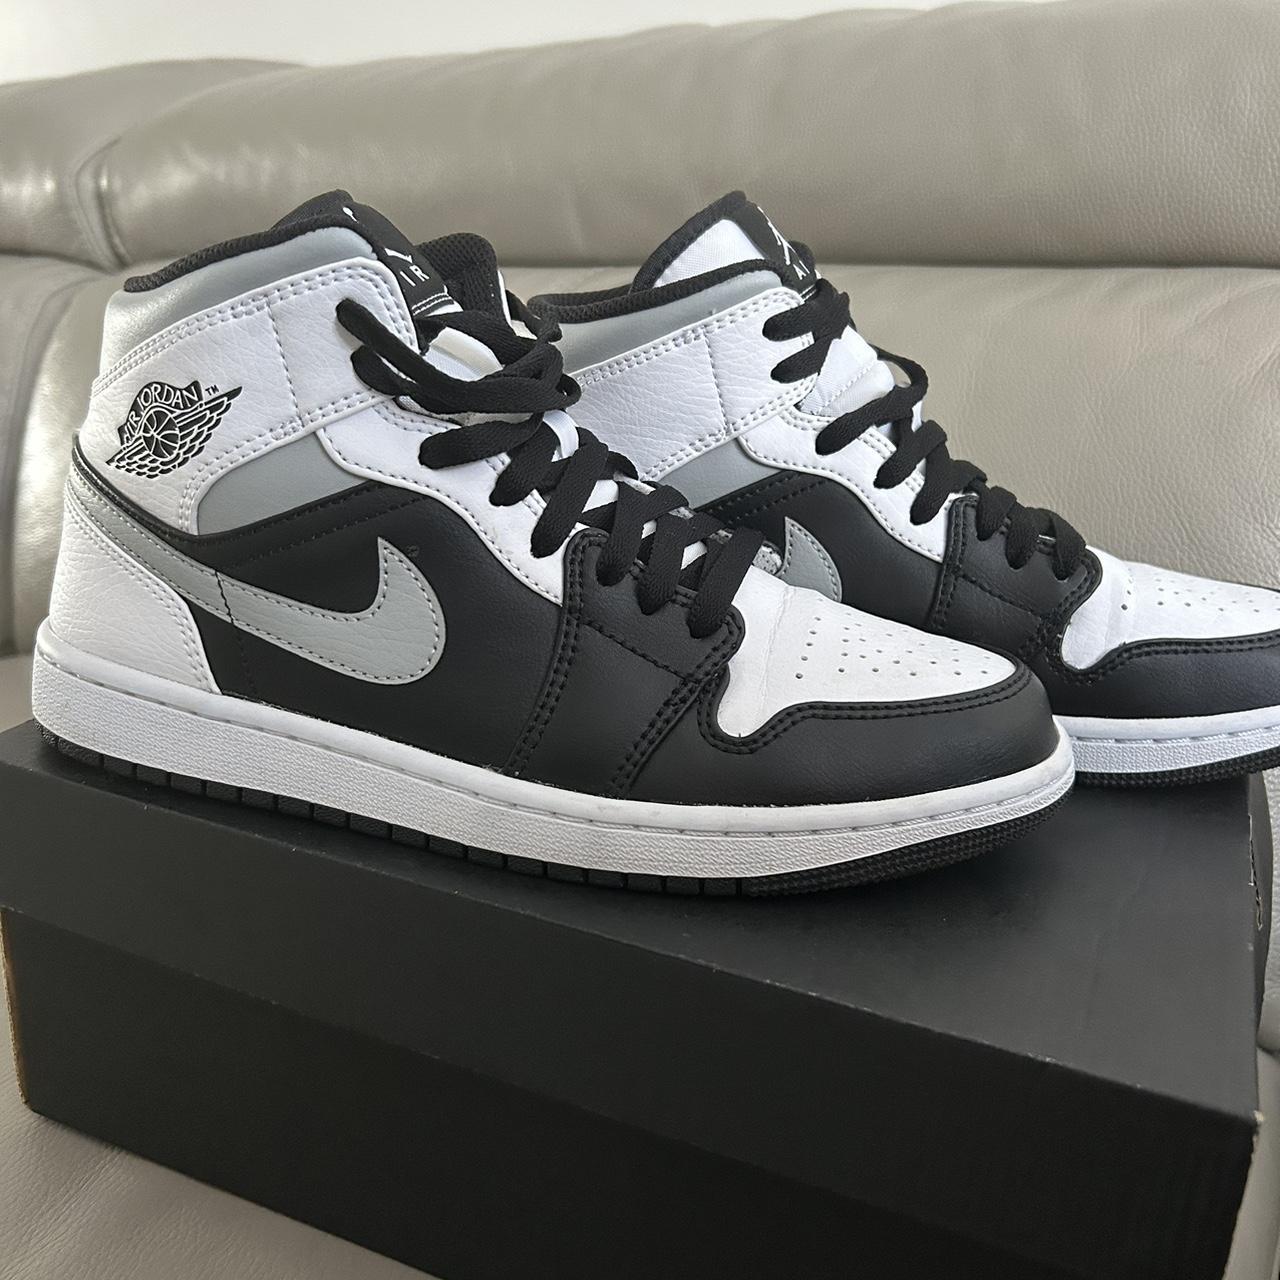 Nike air jordan 1 mid 'shadow' Like brand new only... - Depop